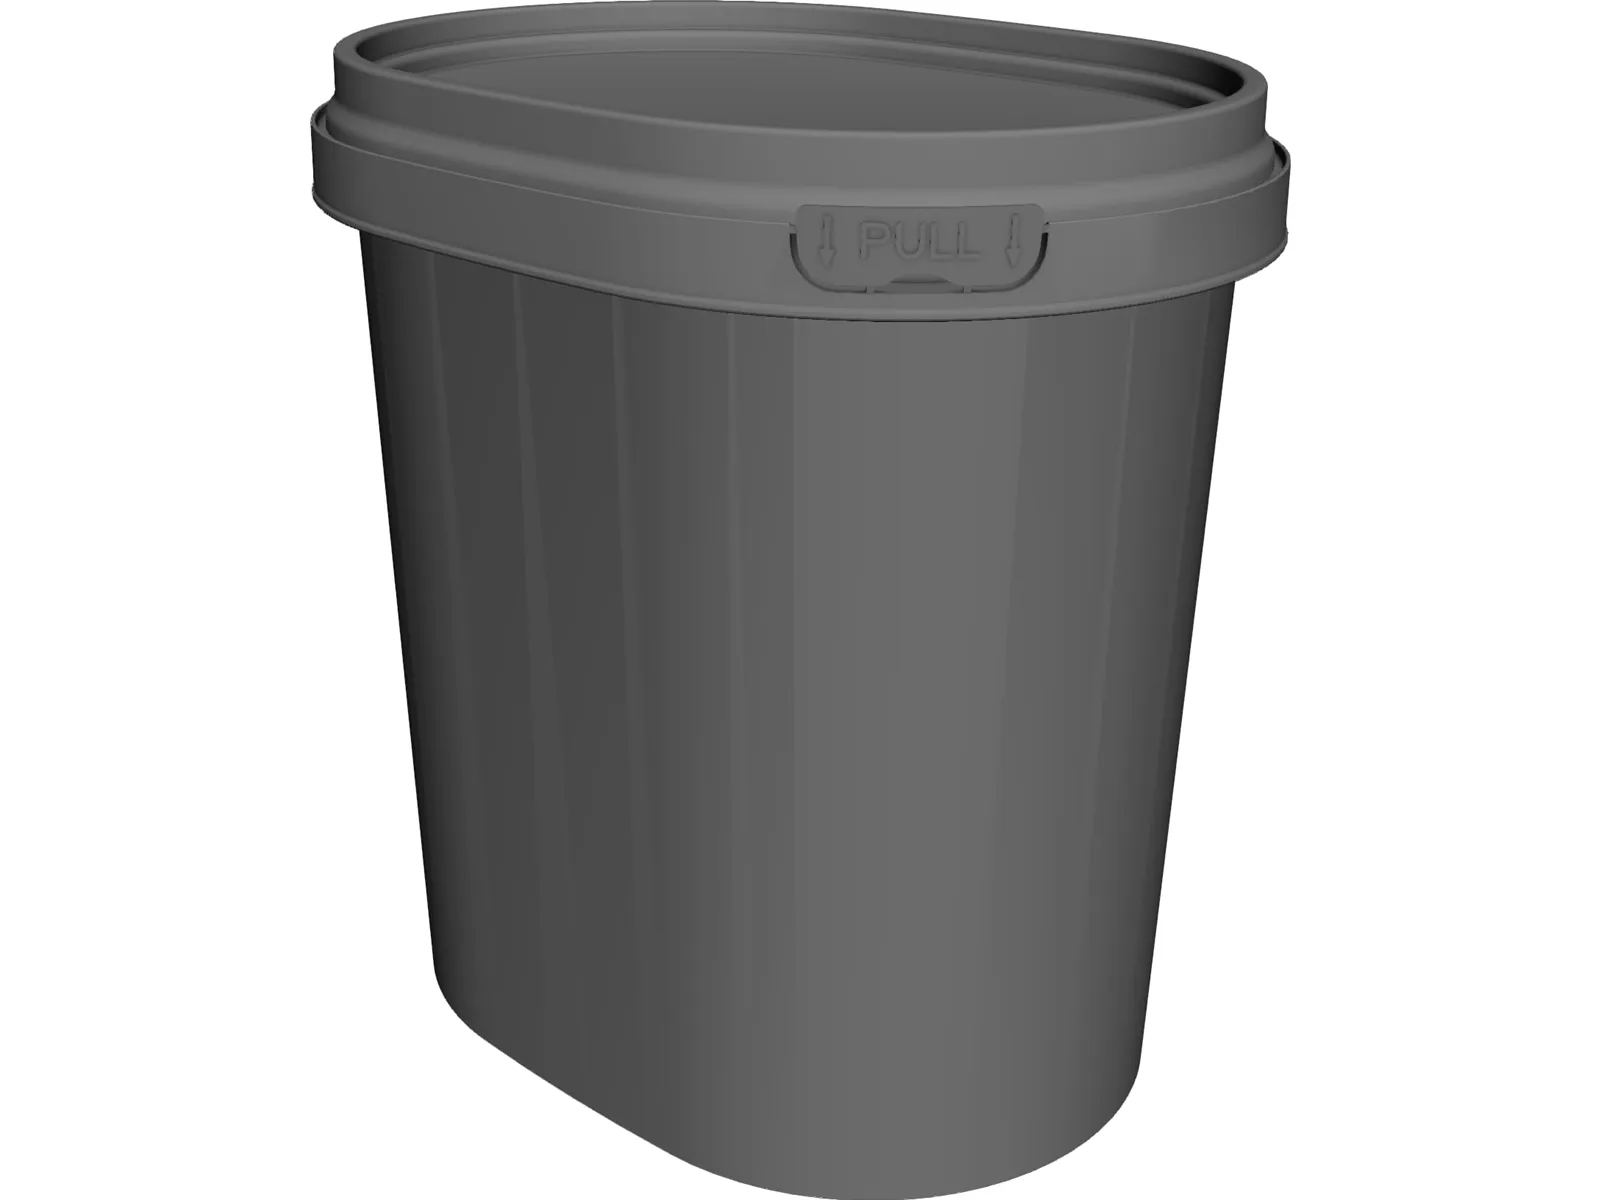 Bucket Container 3D Model